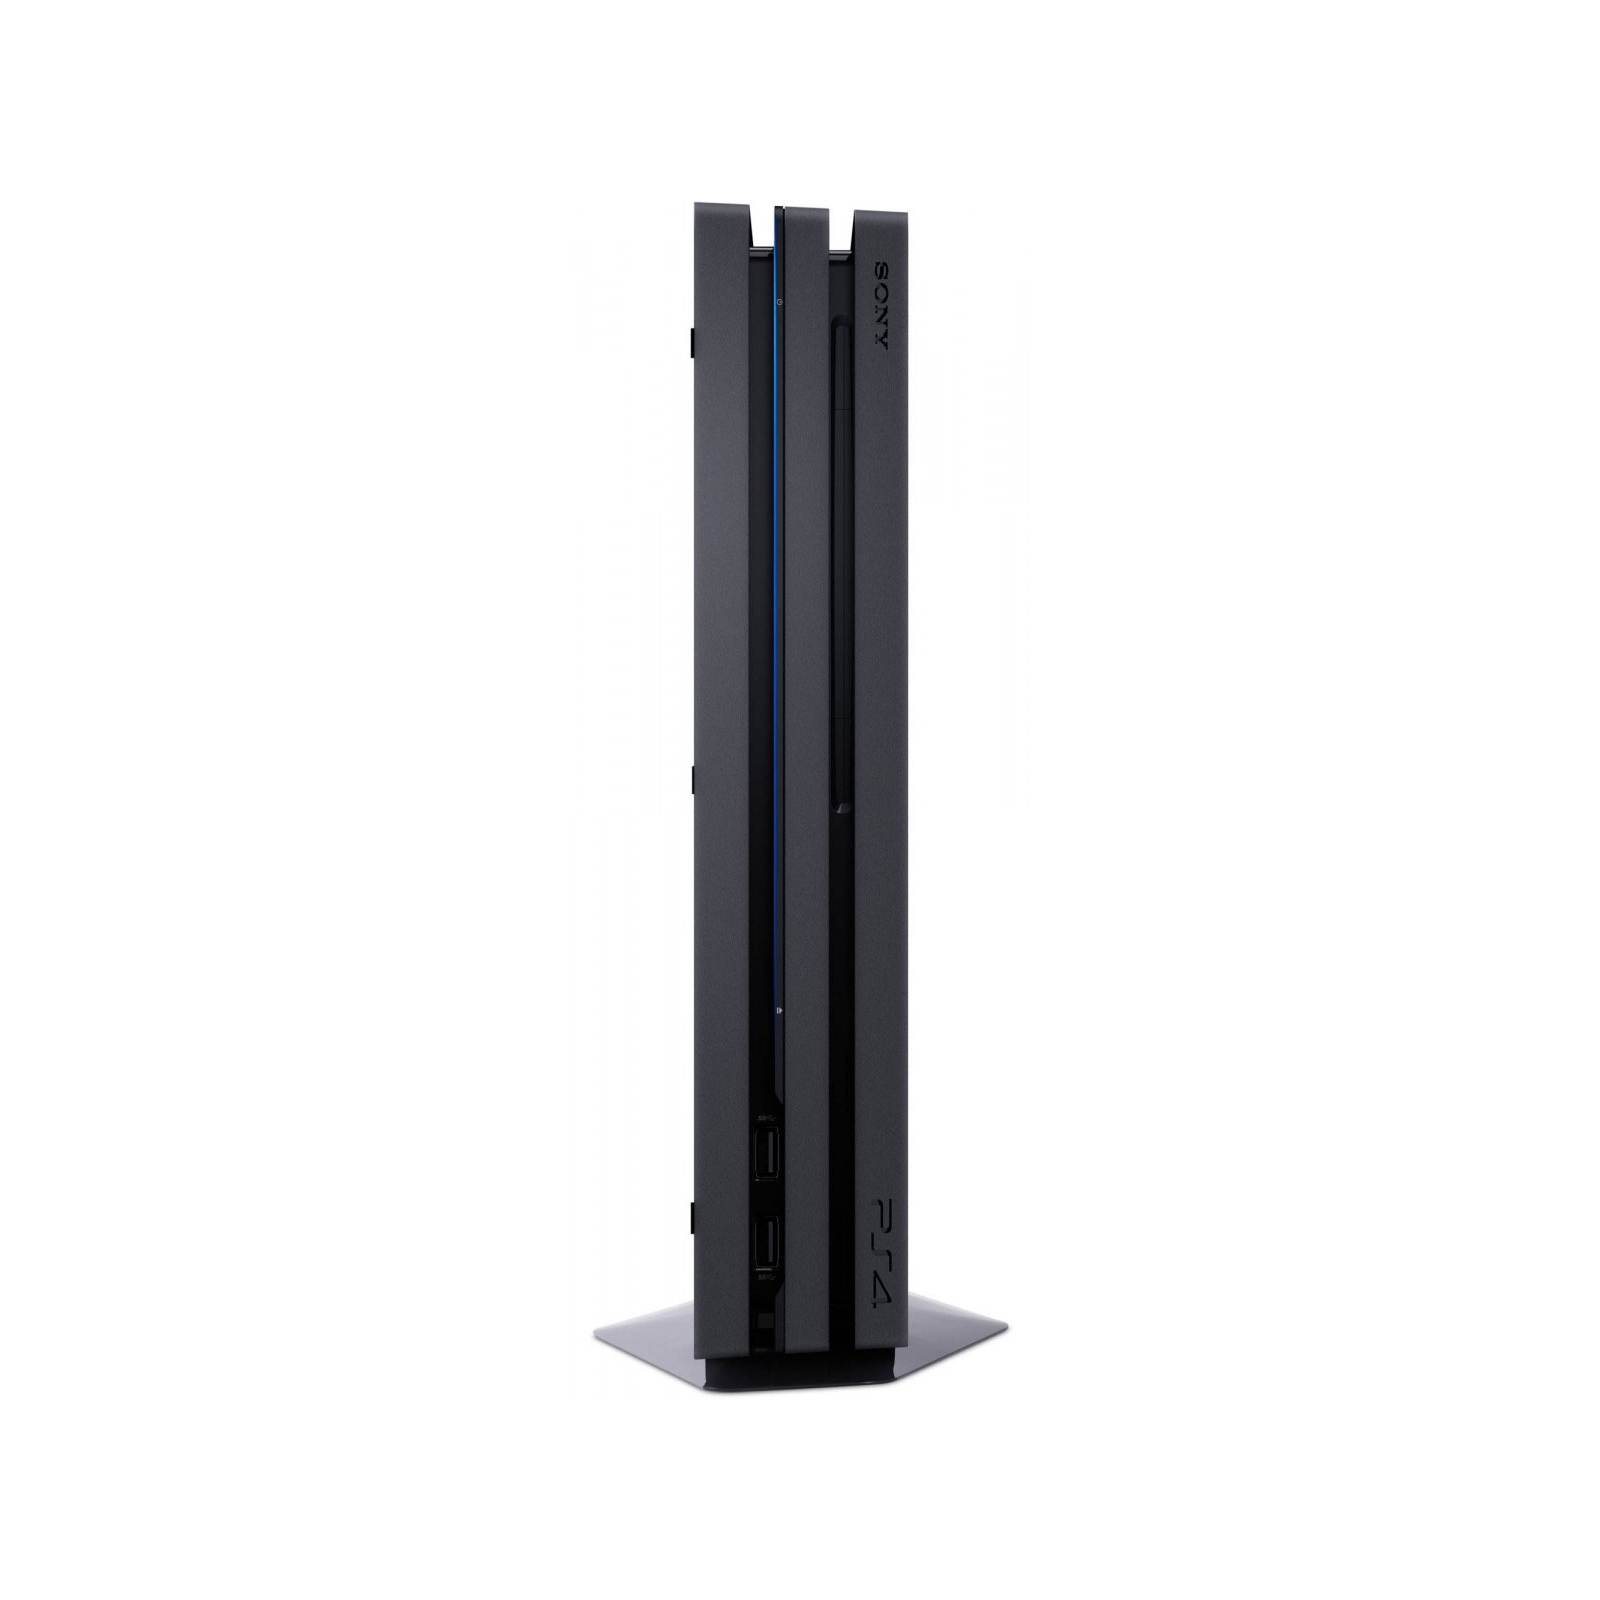 Игровая консоль Sony PlayStation 4 Pro 1Tb Black (9887850) изображение 6